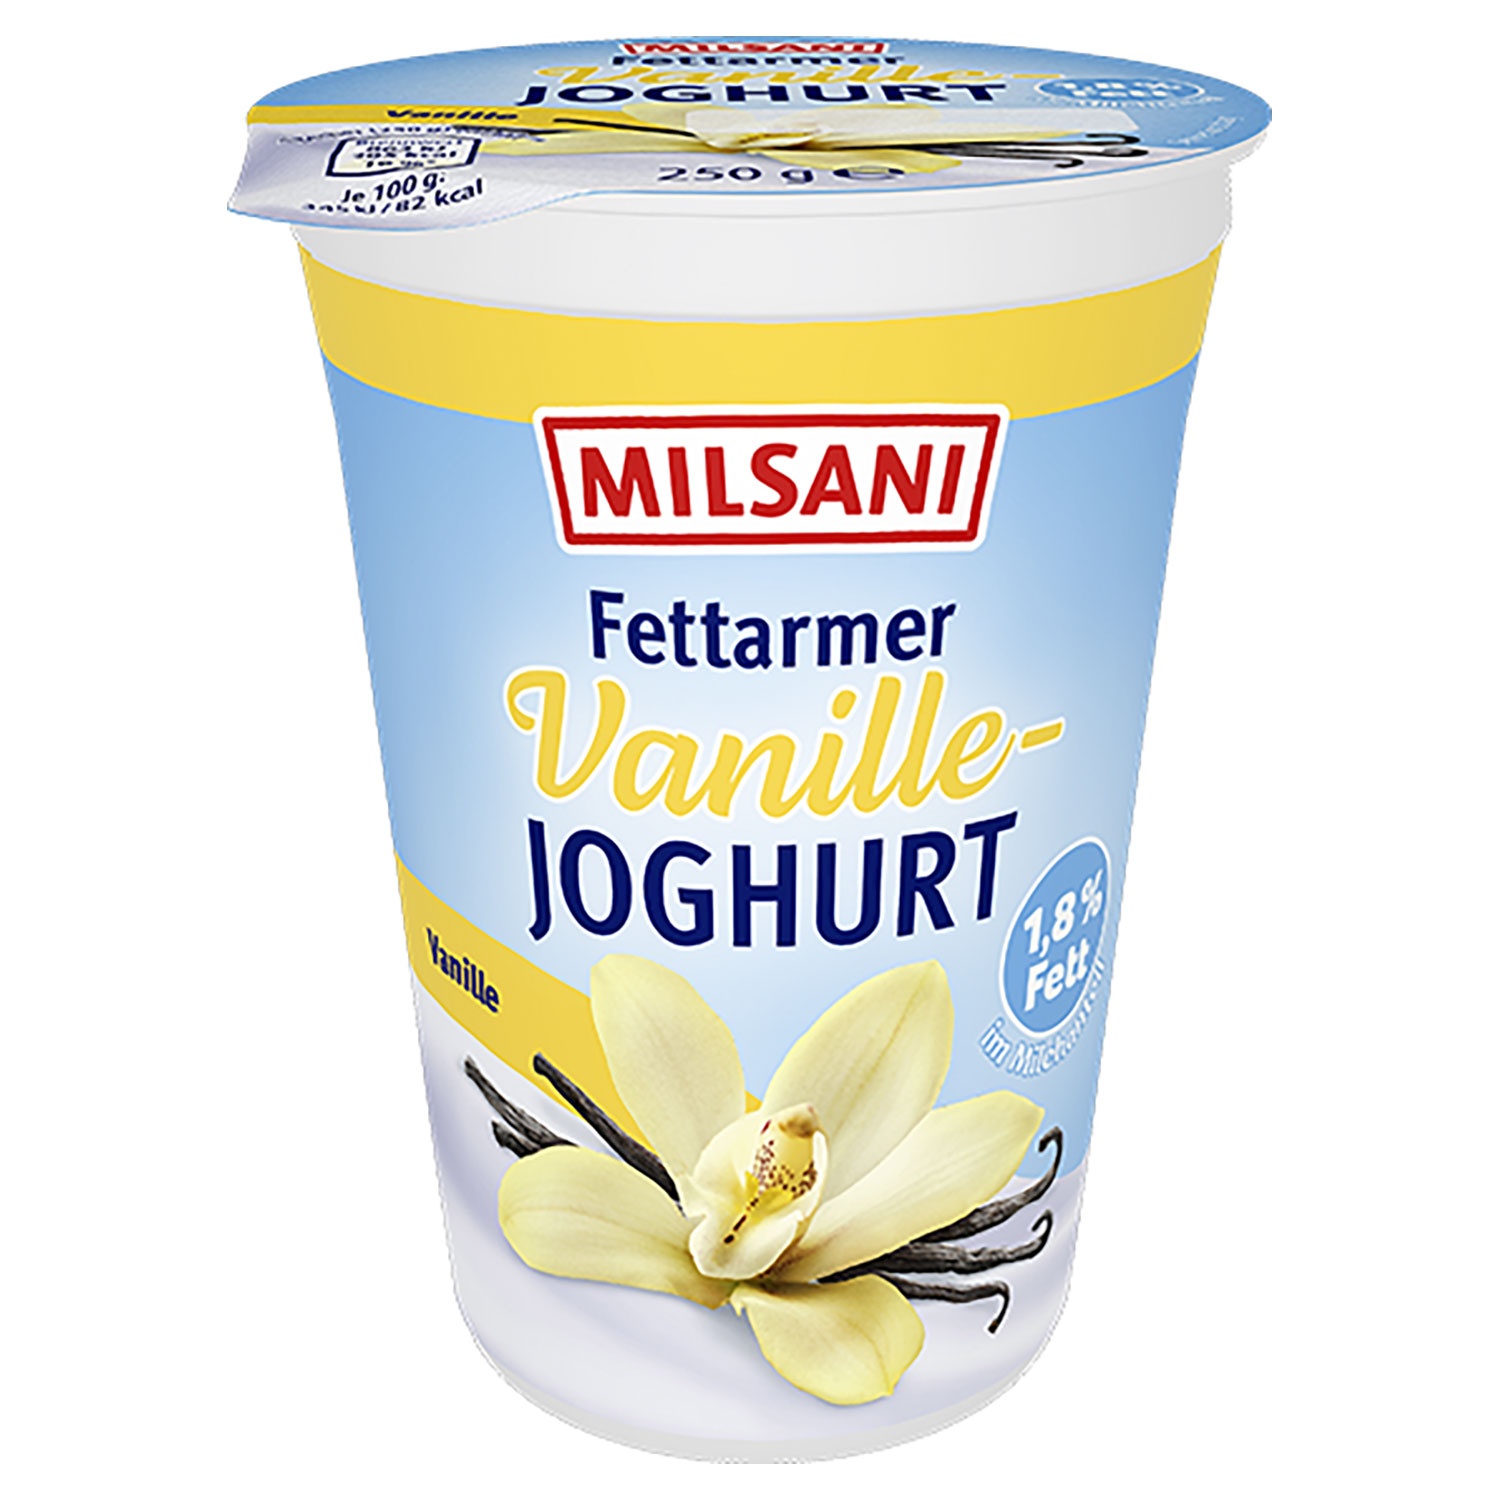 MILSANI Fettarmer Fruchtjoghurt 250 g